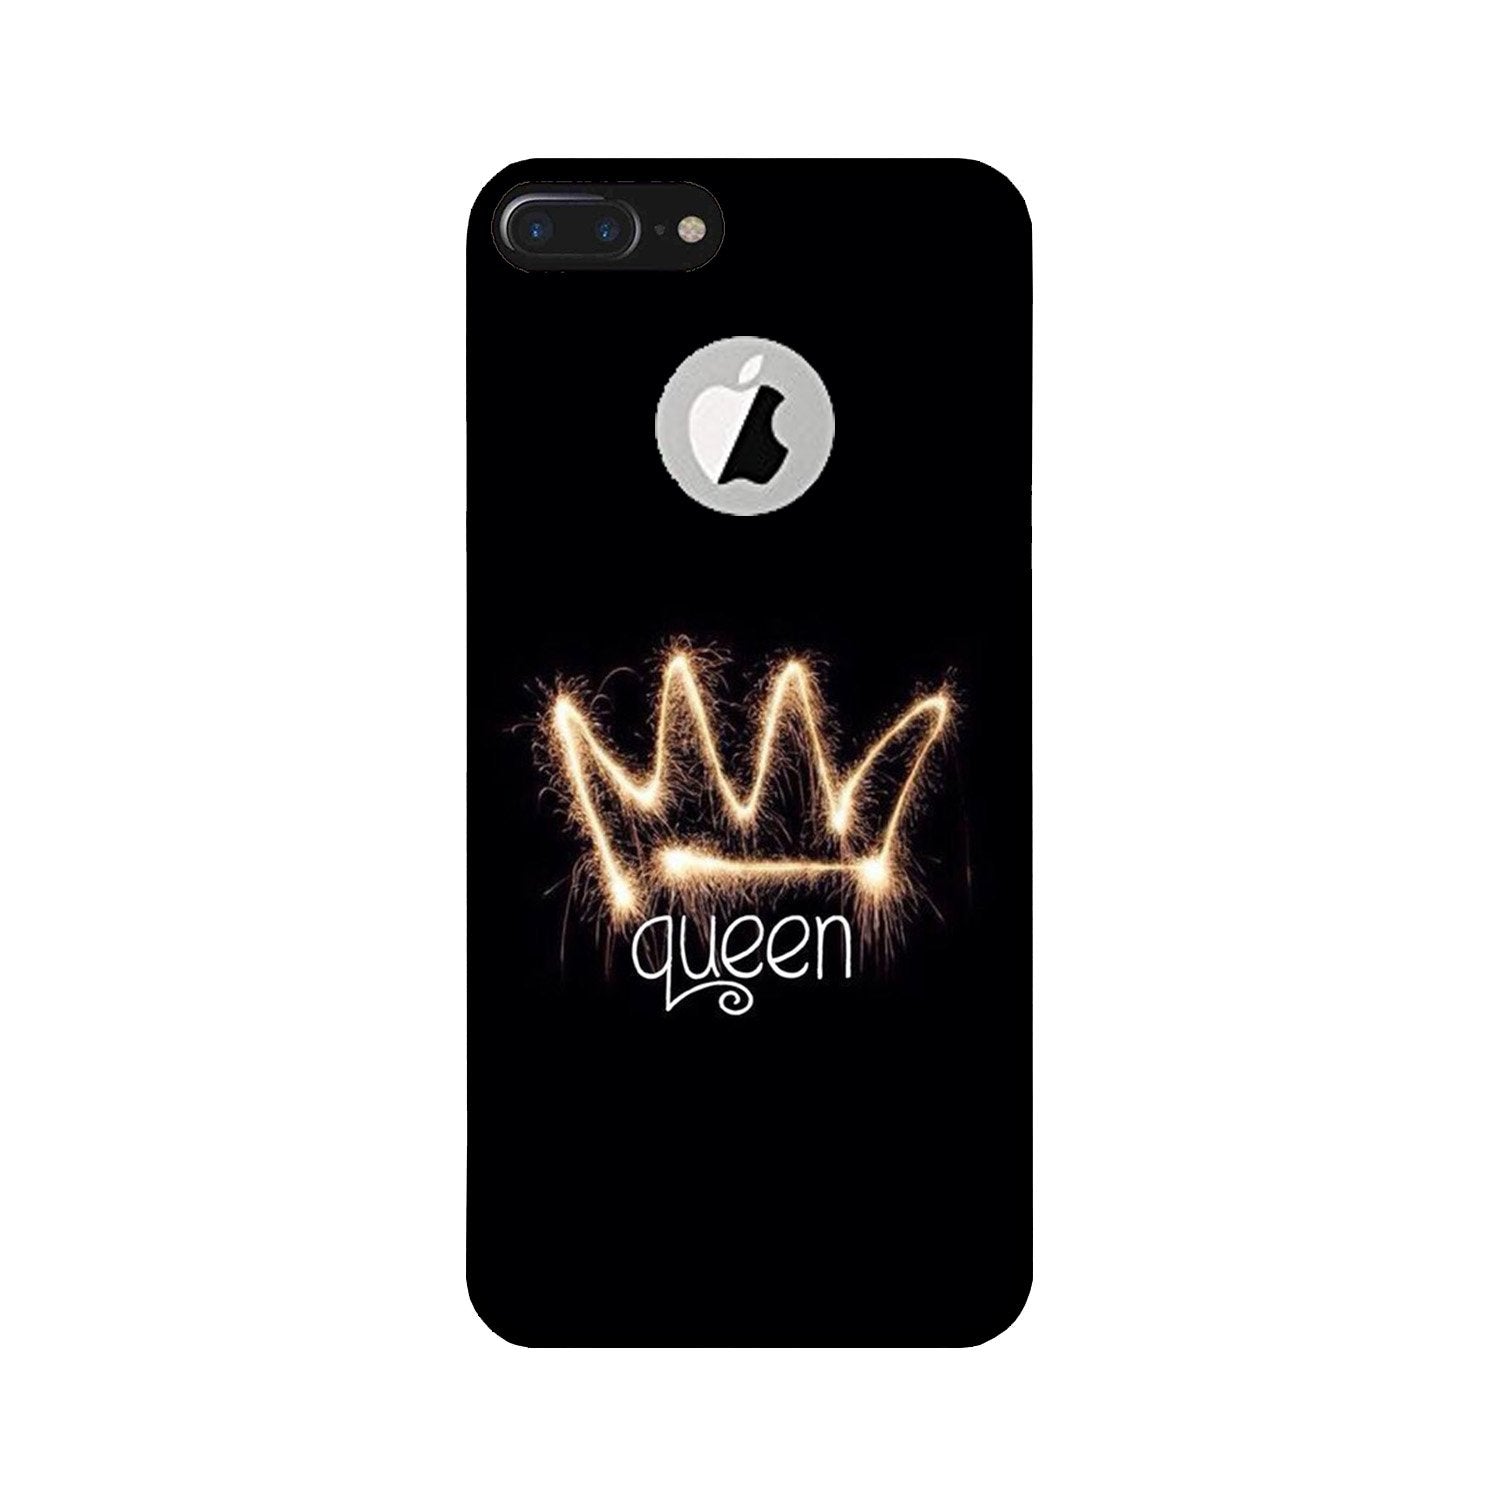 Queen Case for iPhone 7 Plus logo cut (Design No. 270)